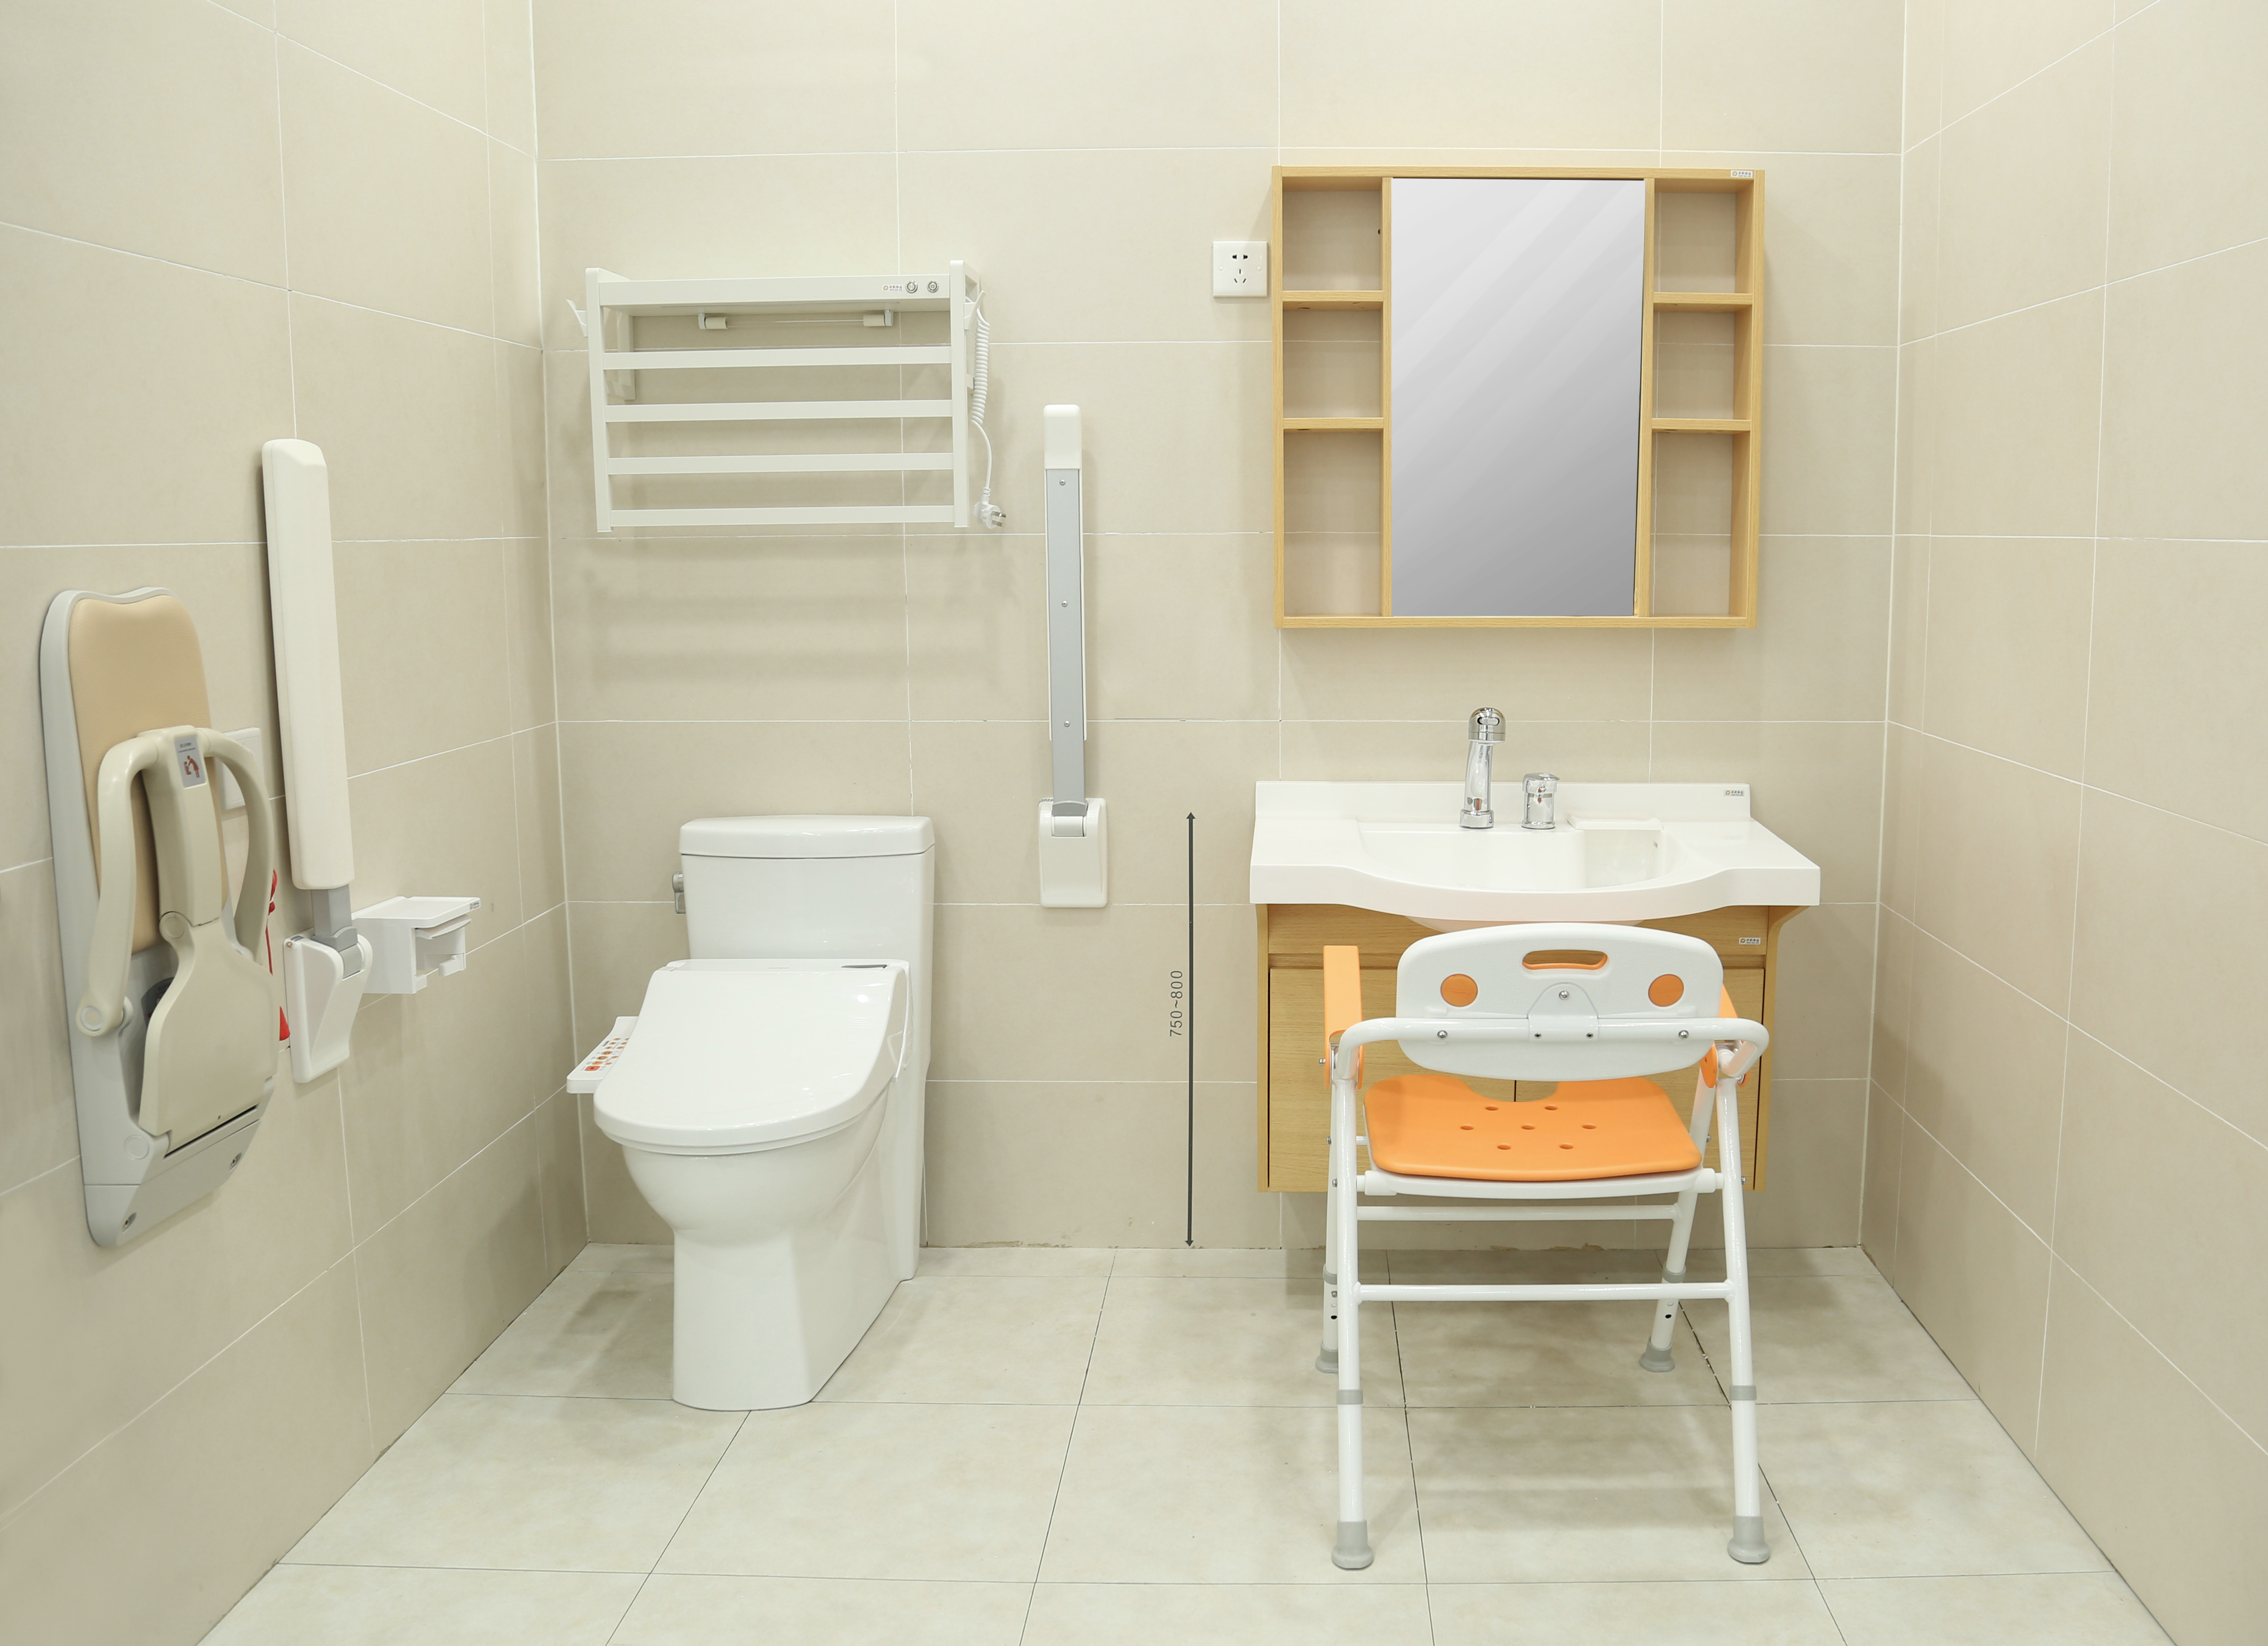 保利和品适老化卫浴展示区的自理老人卫生间配置